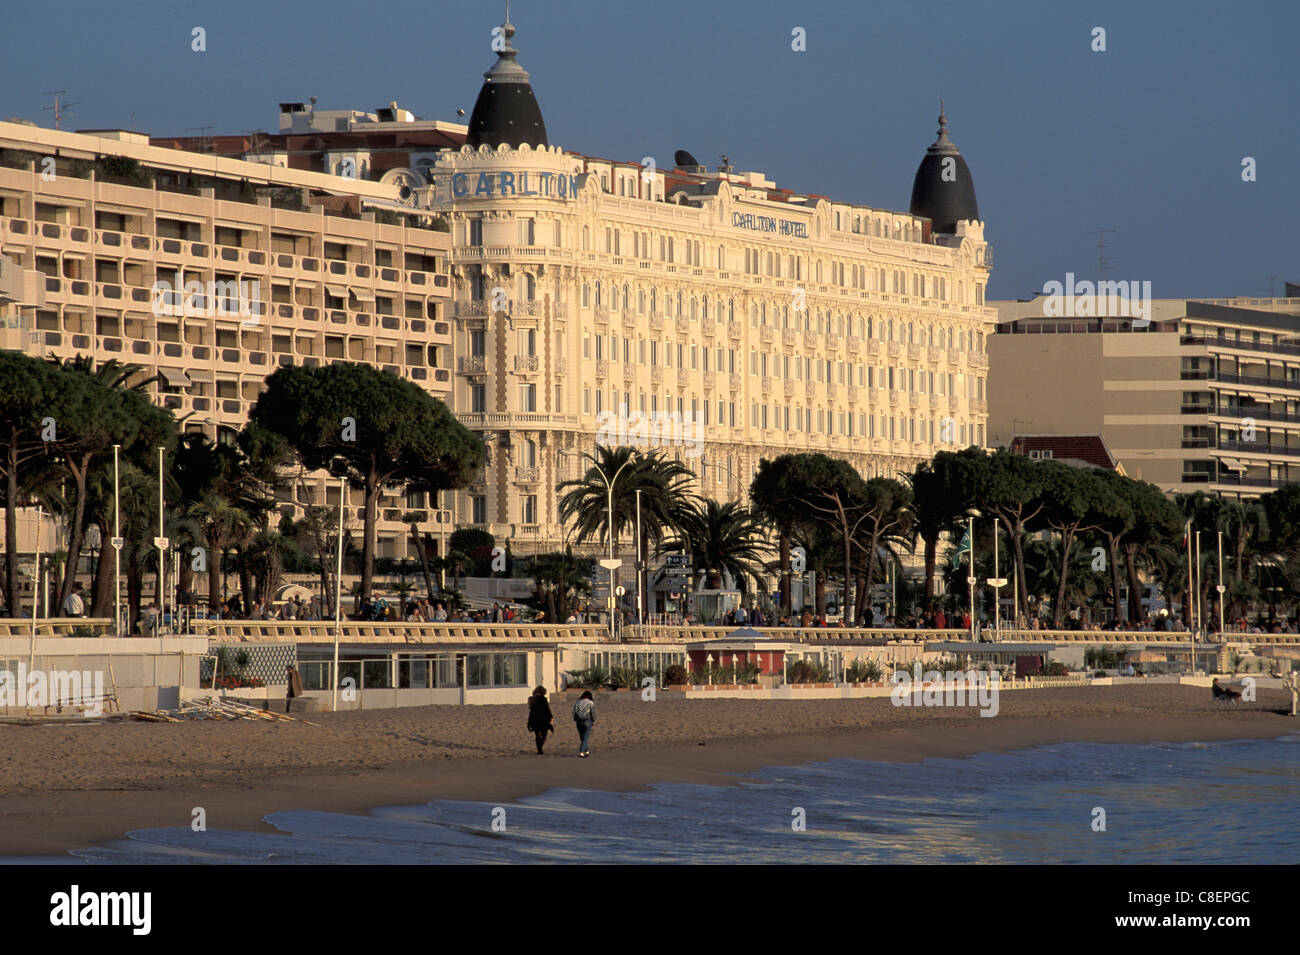 Carlton, Hotel, La Croisette, Cannes, Cote d'azur, Provence, France, Europe, Stock Photo